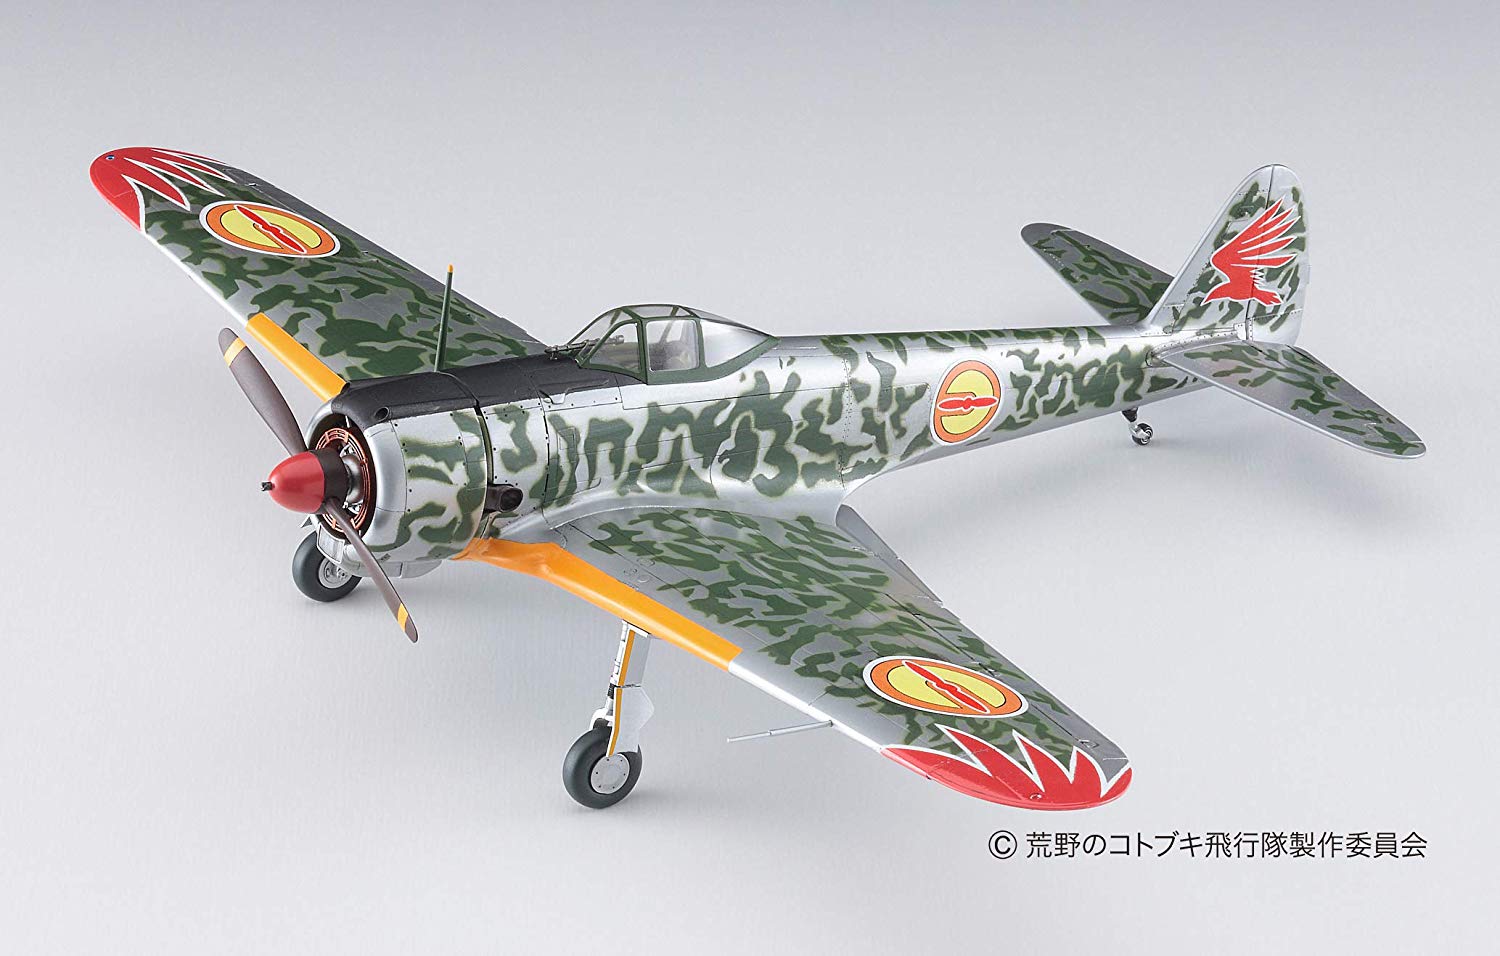 荒野のコトブキ飛行隊『一式戦闘機 隼 I型 キリエ機』1/48 プラモデル-016